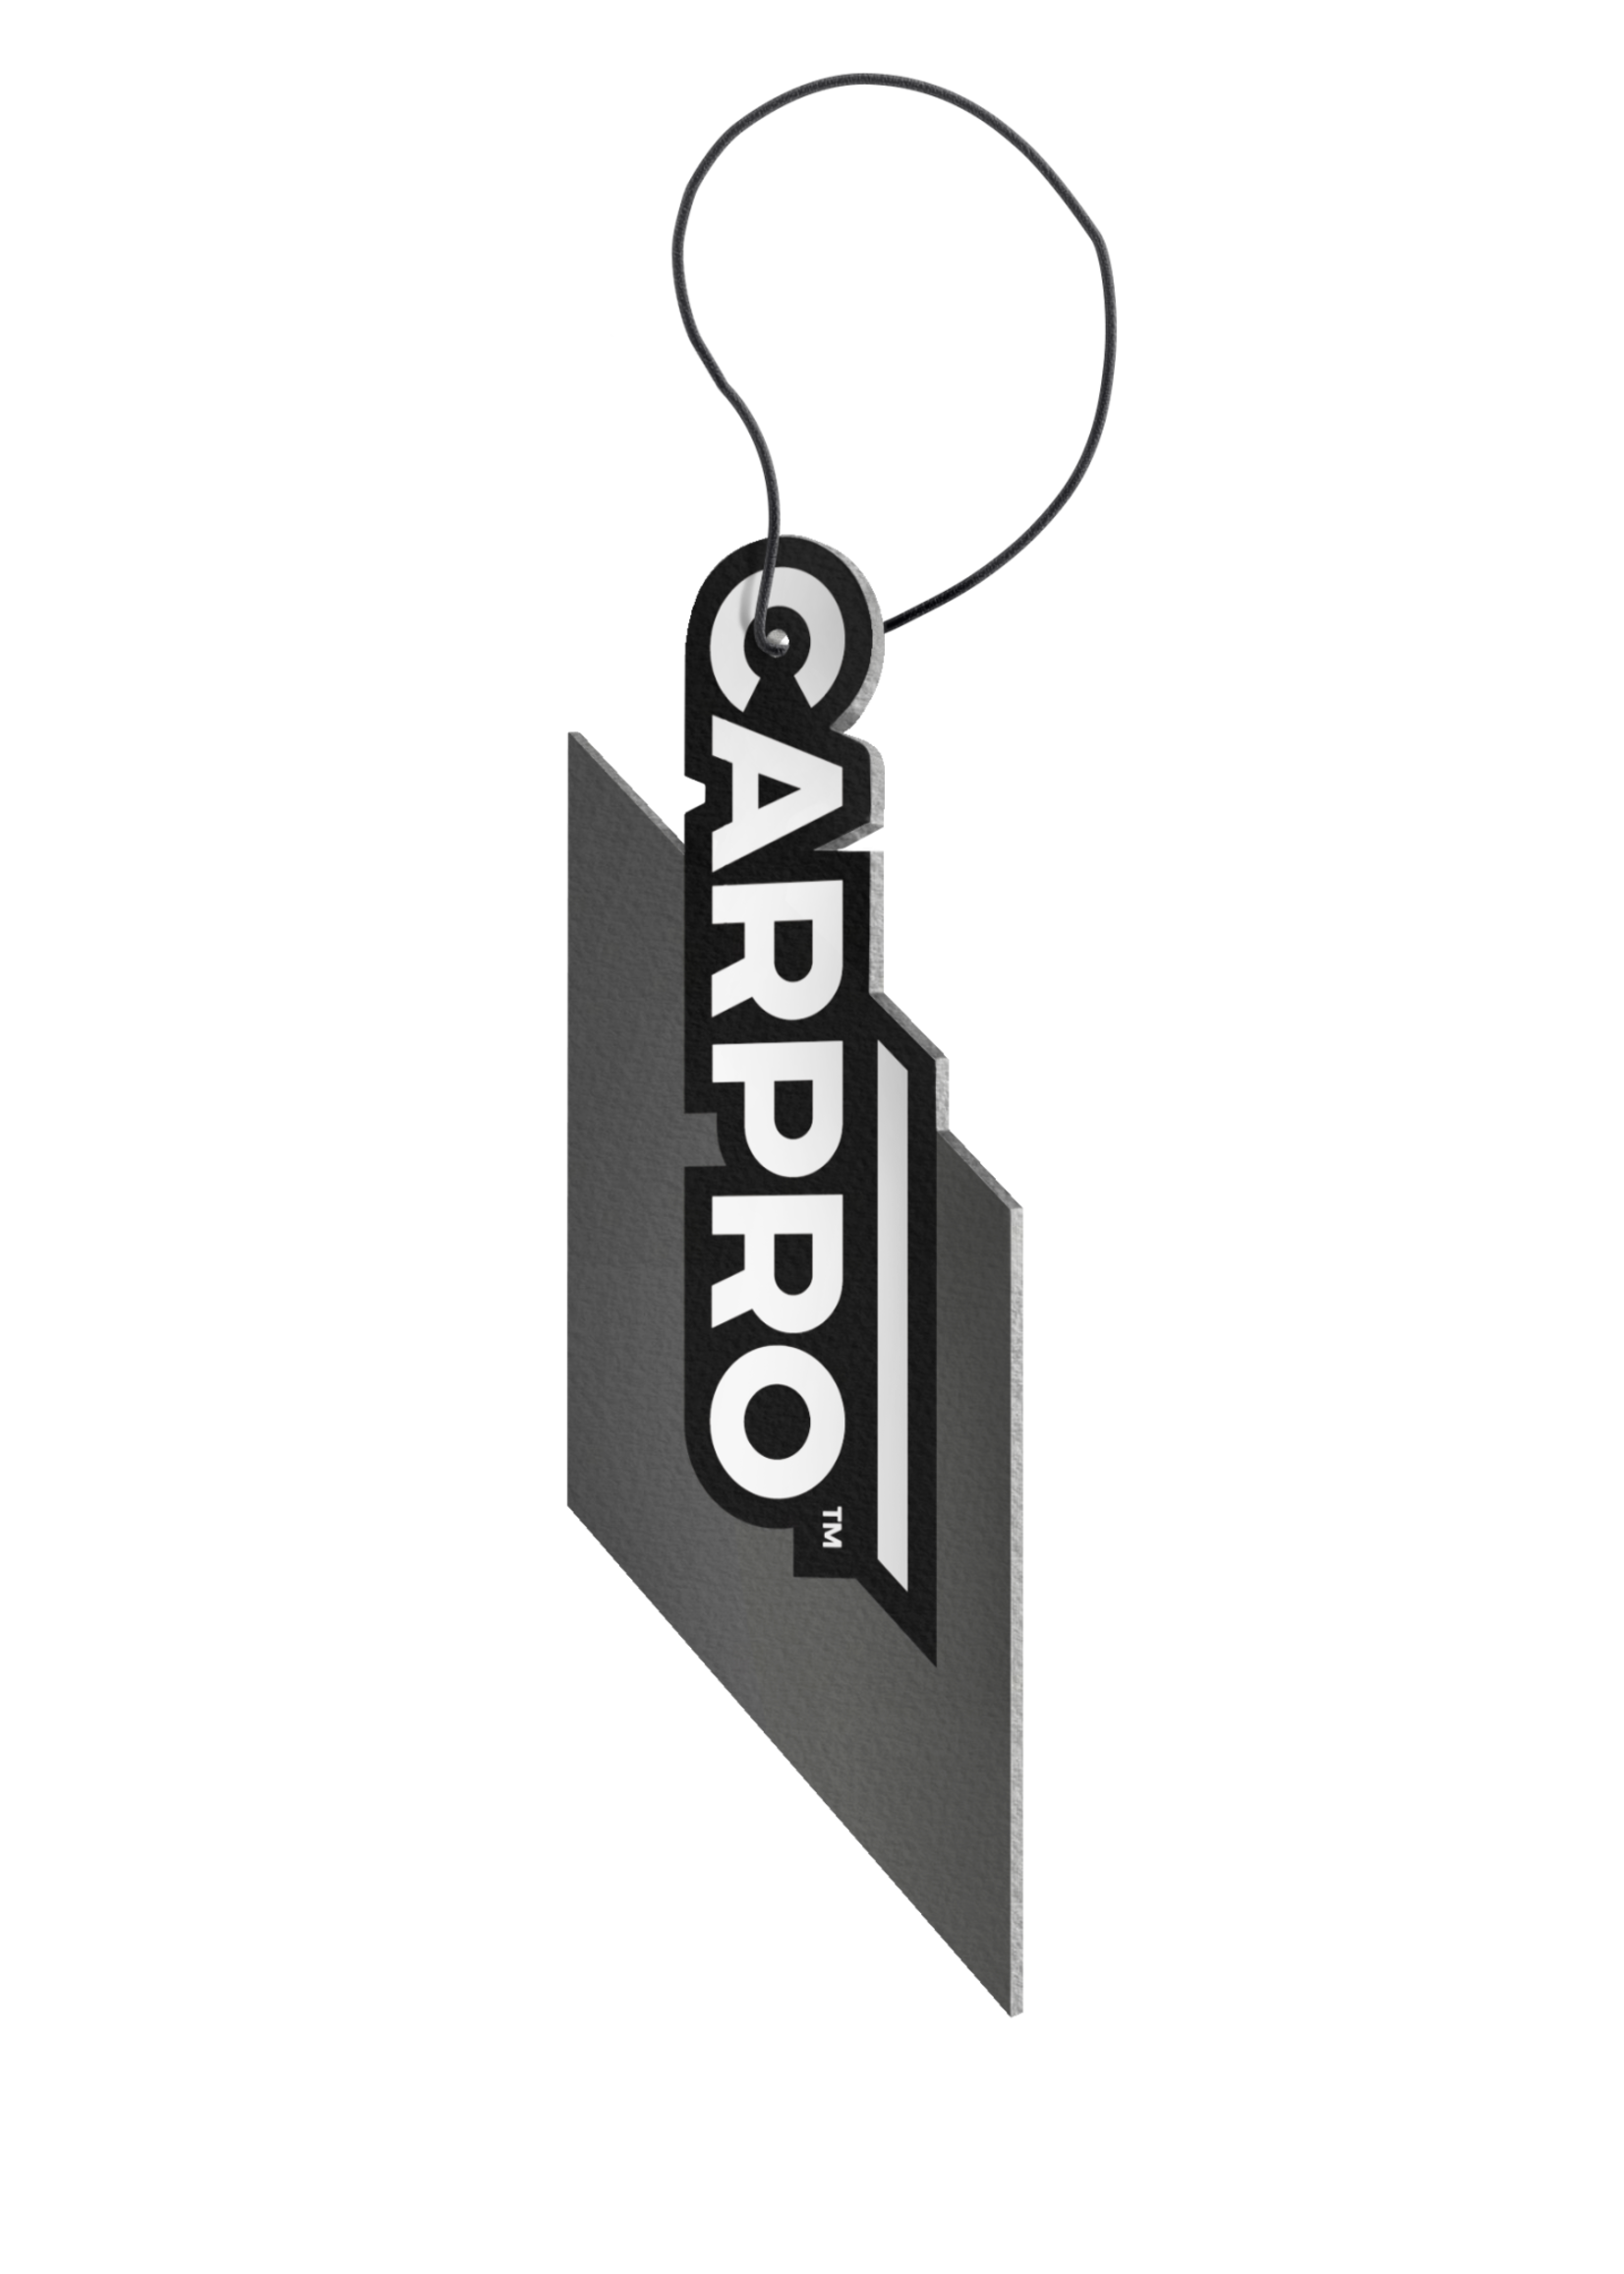 CARPRO CARPRO Air Freshener Single